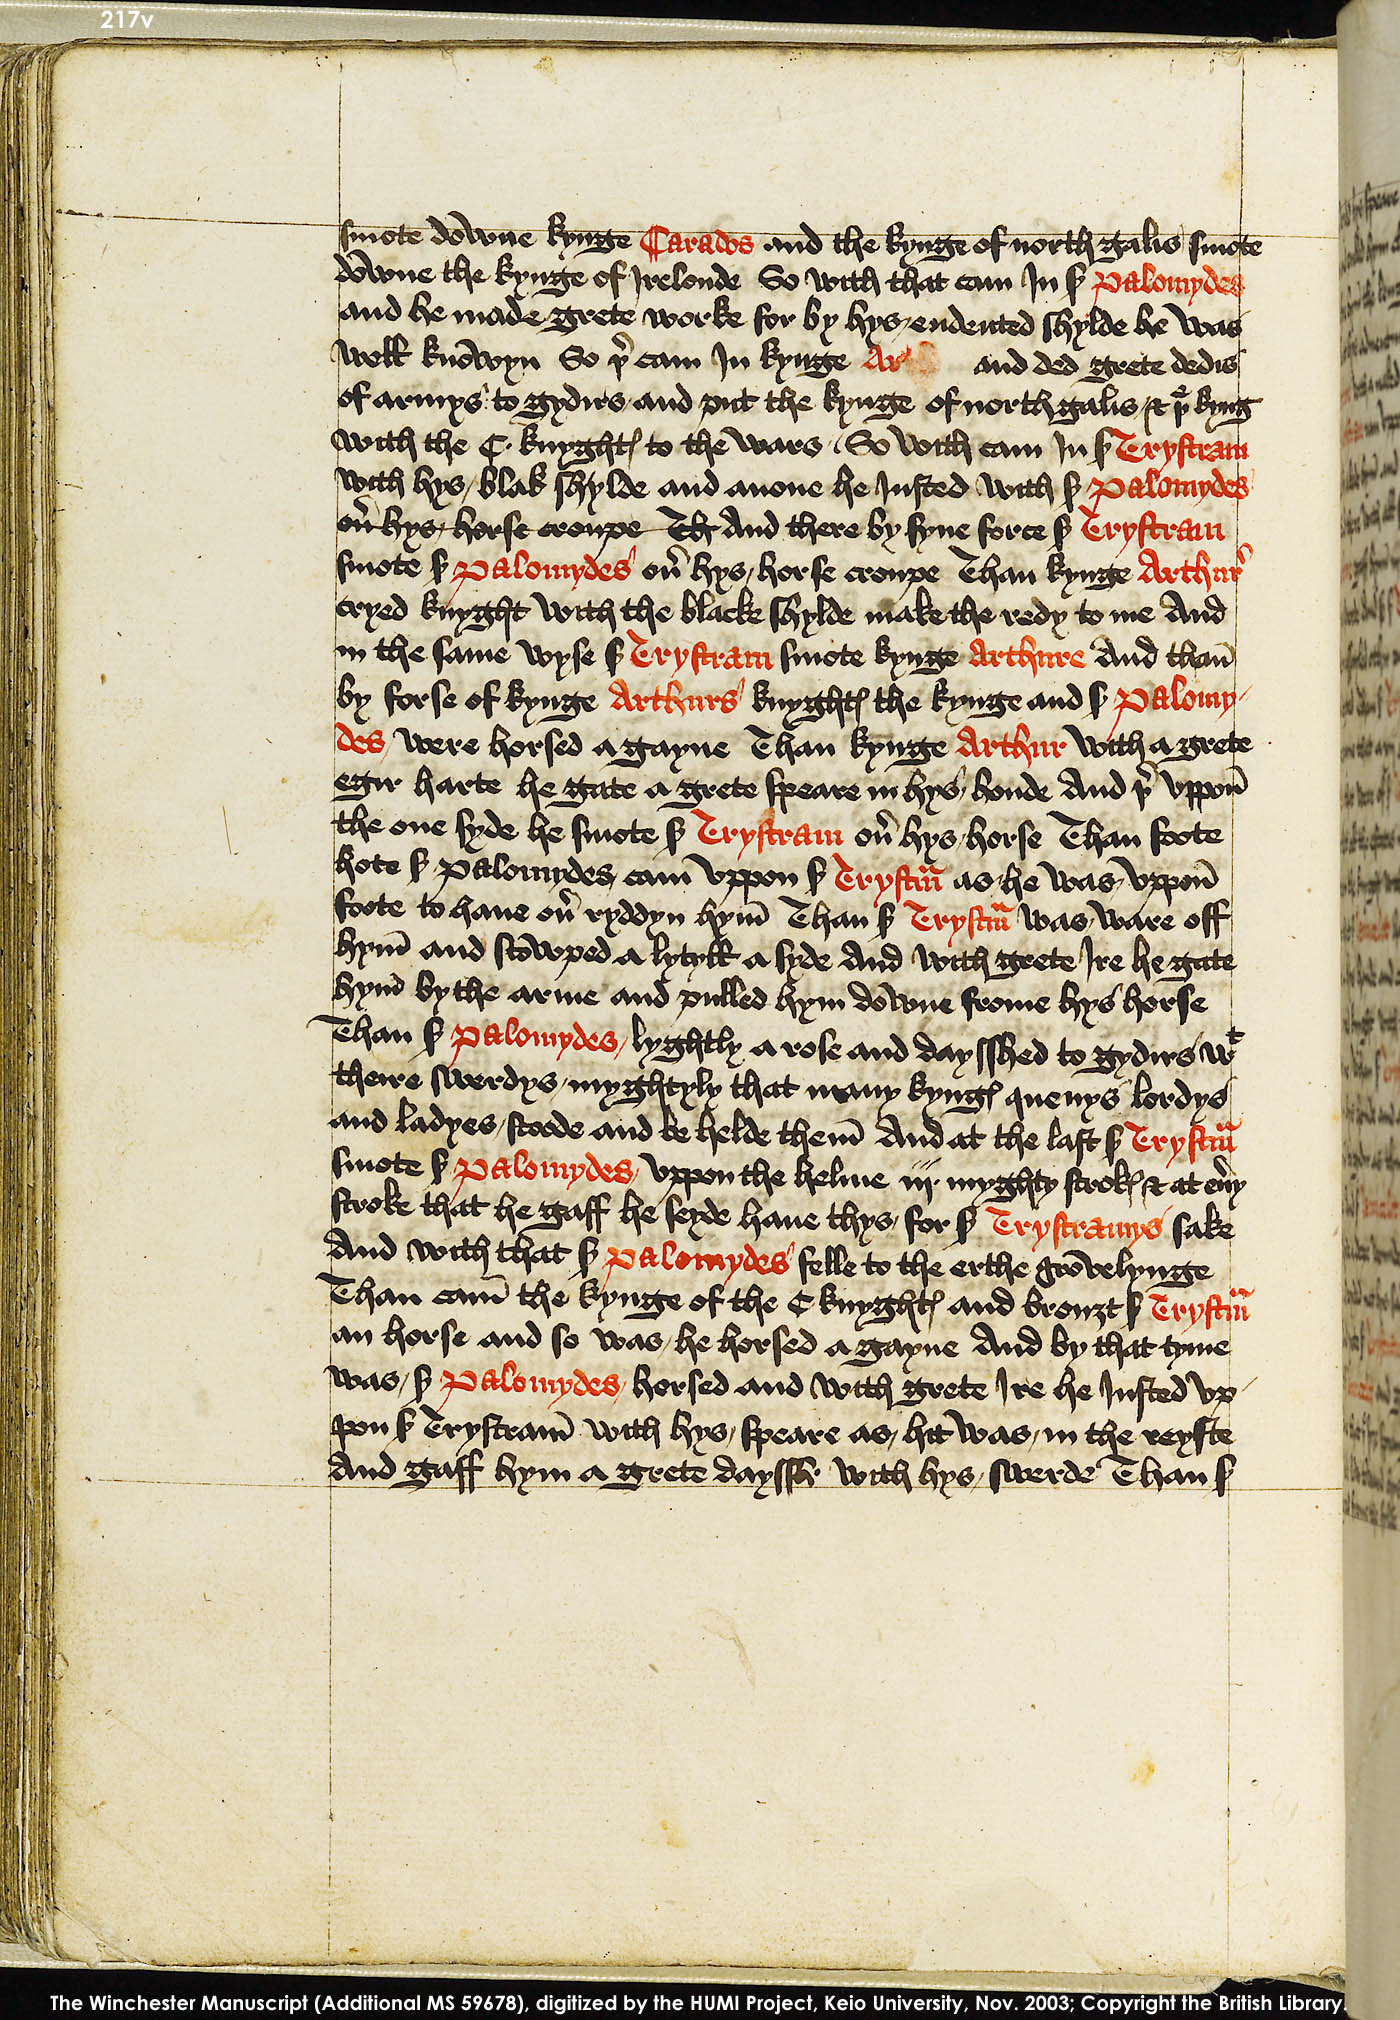 Folio 217v